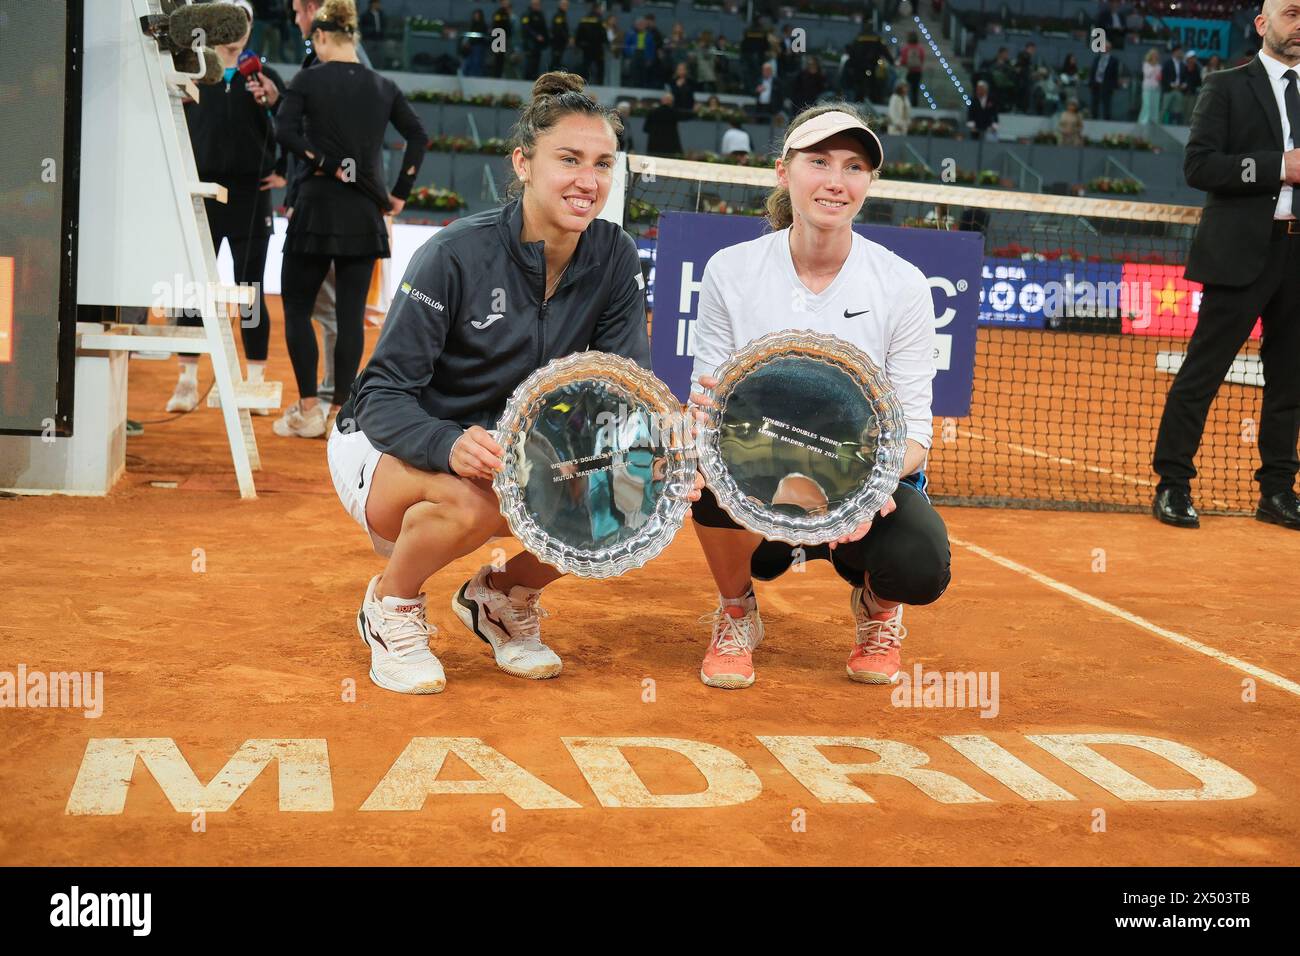 Sara Sorribes e Cristina Bucsa durante il loro match nella finale di doppio femminile al mutua Madrid Open contro Barbora Krejcikova e Laura Siegemu Foto Stock